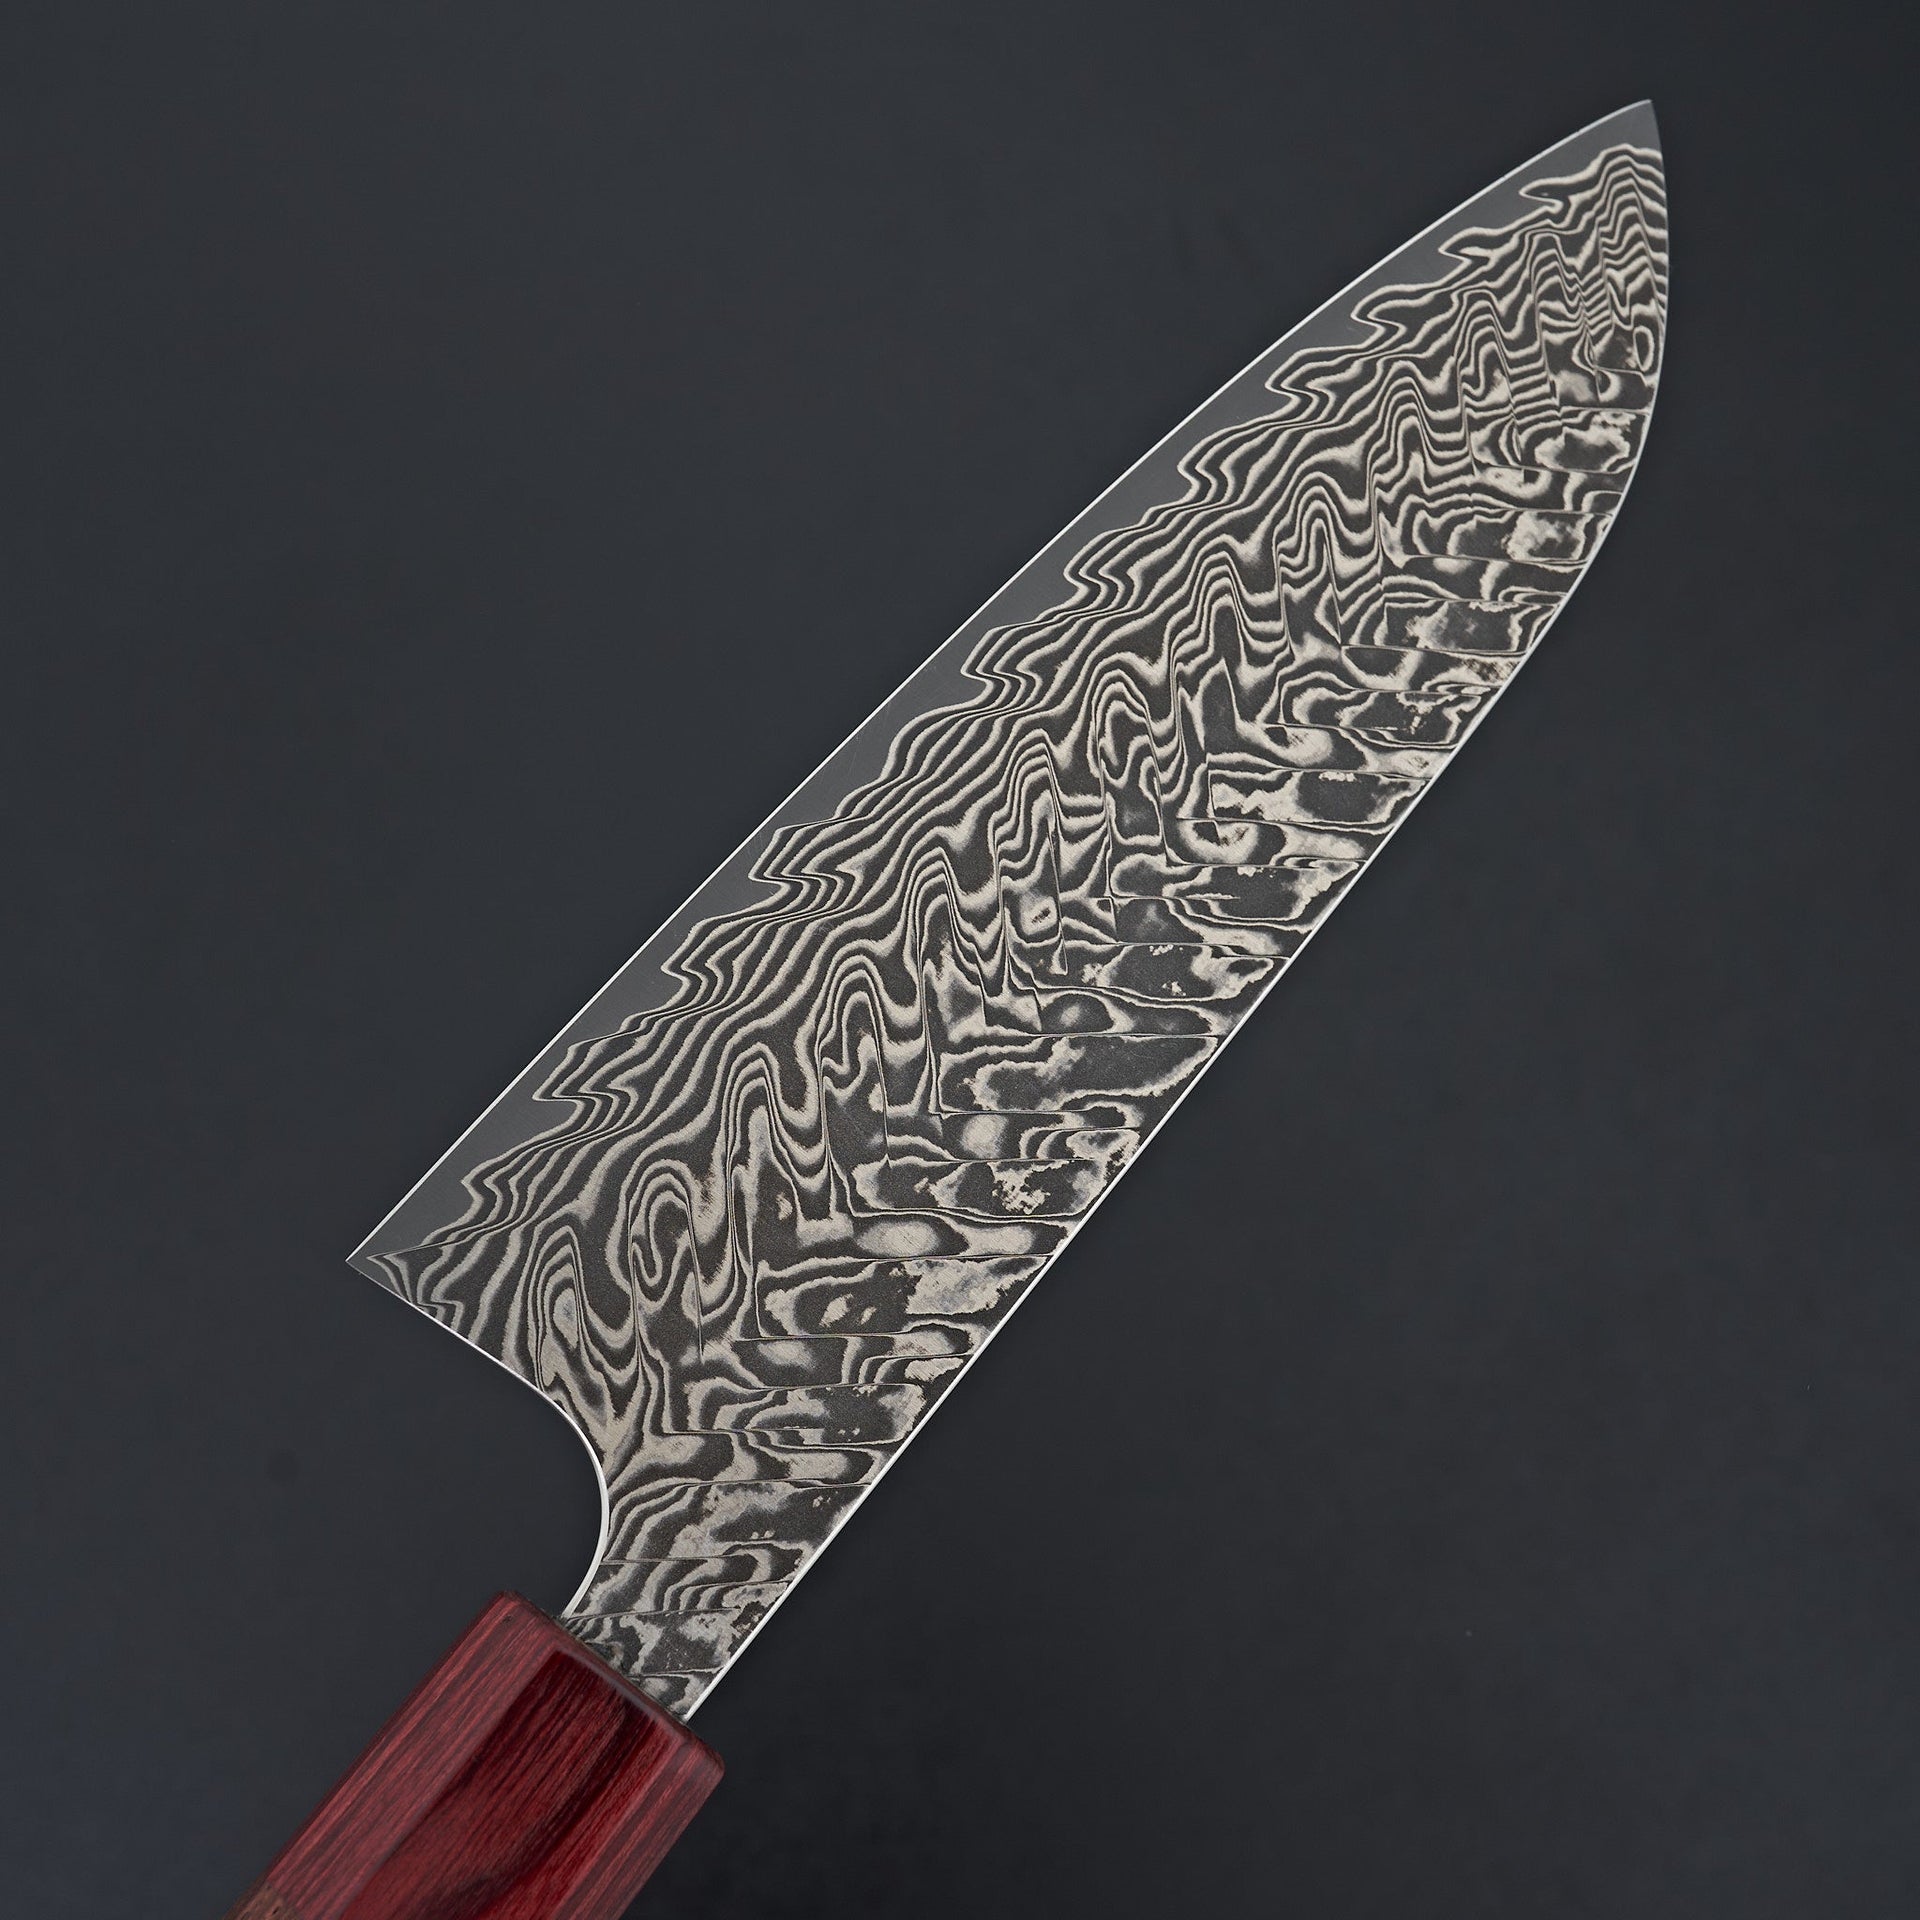 Kato SG2 Damascus Santoku 165mm-Knife-Yoshimi Kato-Carbon Knife Co